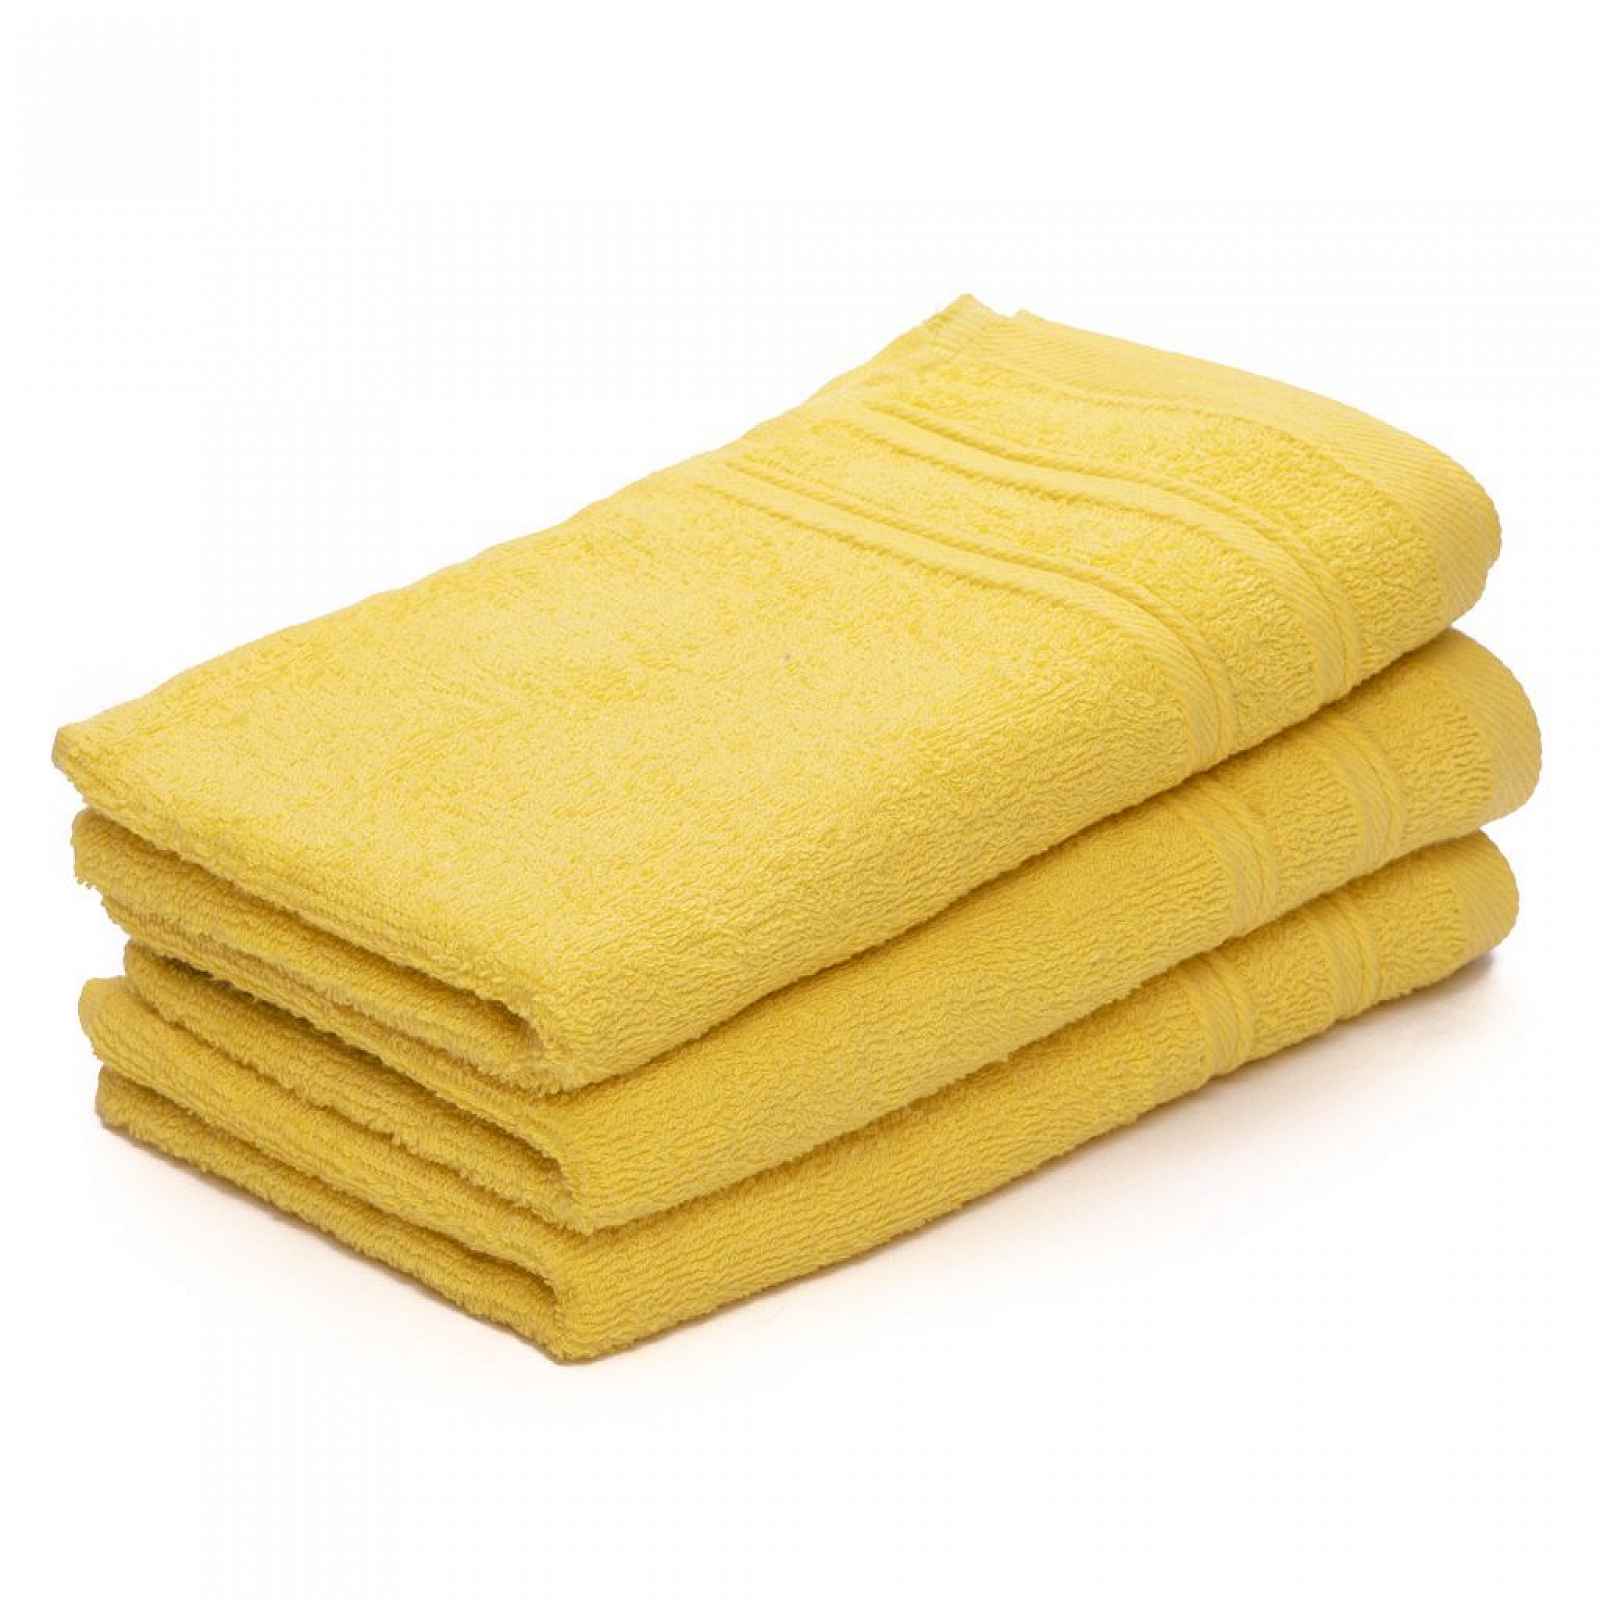 Dětský ručník Bella žlutý 30x50 cm